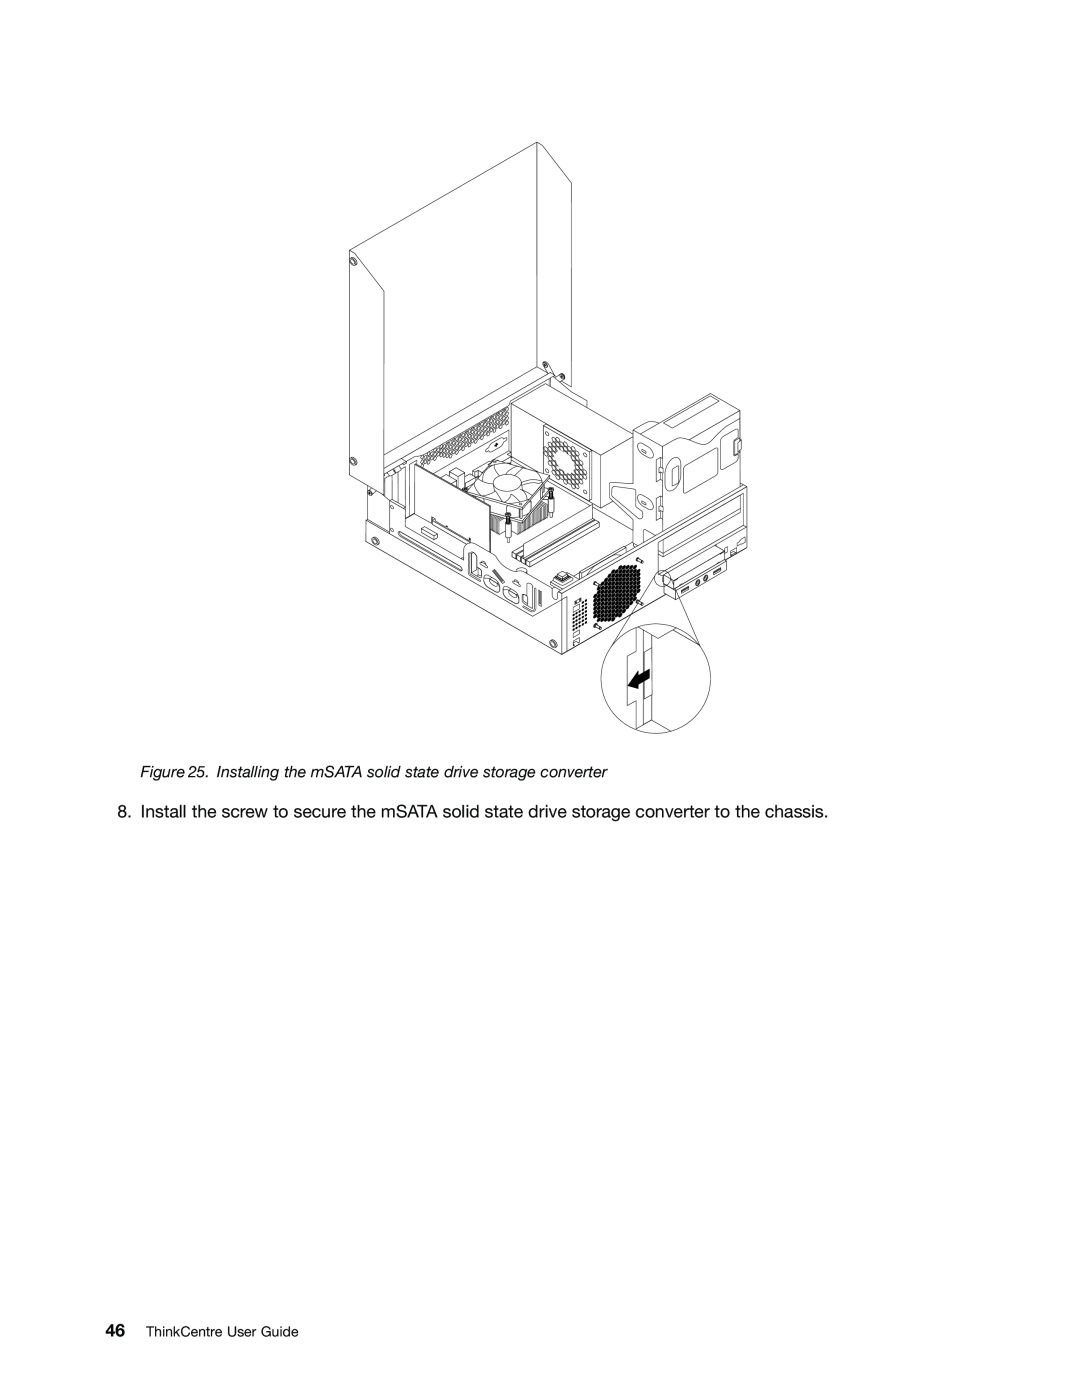 Lenovo 2982, 2988, 2992E5U, 2993, 2996, 3393 Installing the mSATA solid state drive storage converter, ThinkCentre User Guide 